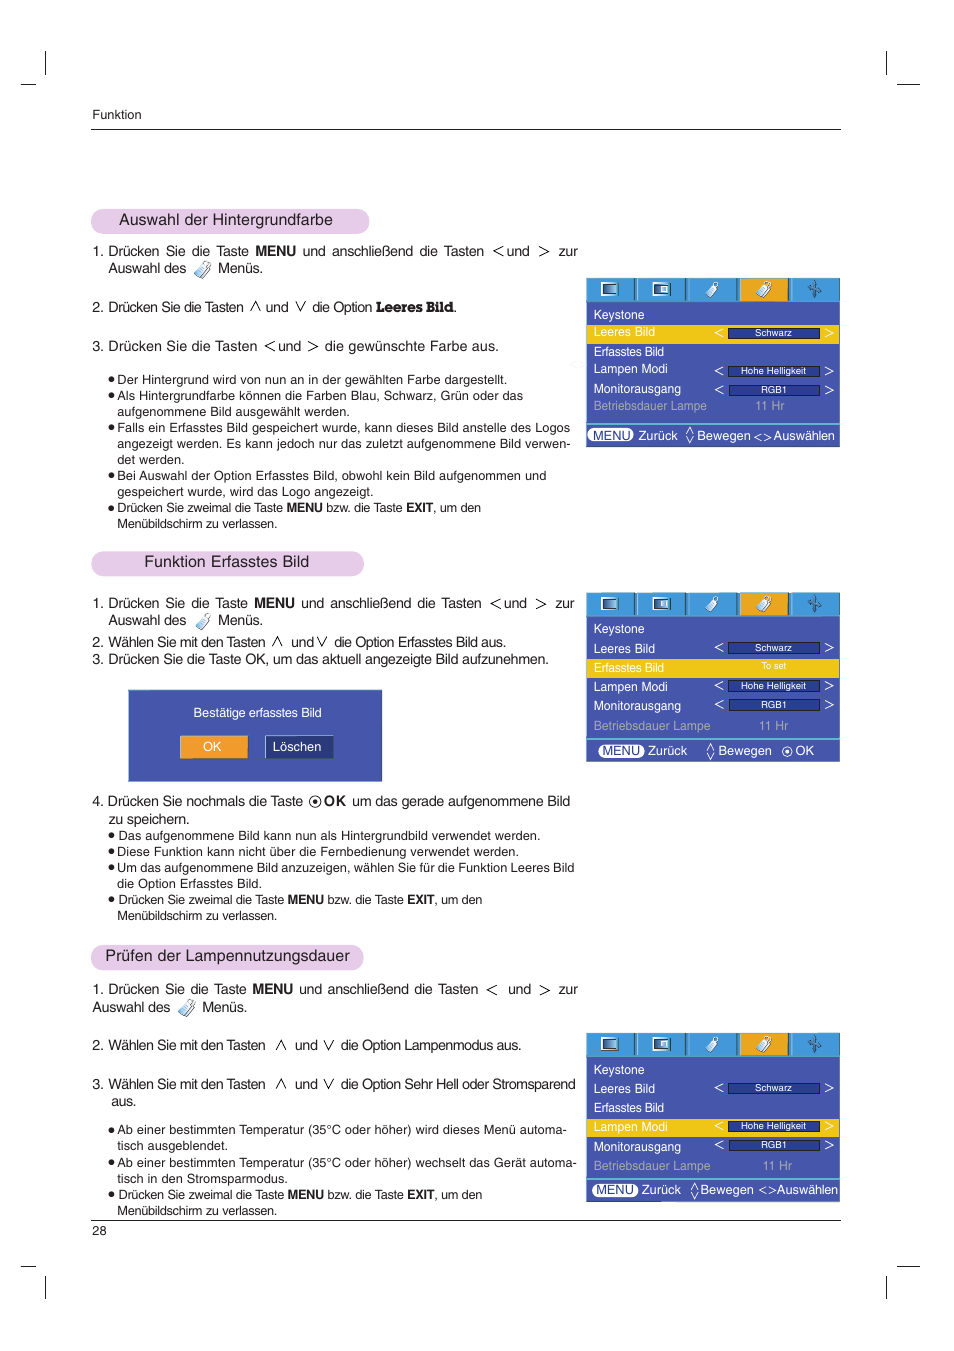 Auswahl der hintergrundfarbe, Funktion erfasstes bild, Prüfen der lampennutzungsdauer | LG BX501B Benutzerhandbuch | Seite 28 / 42